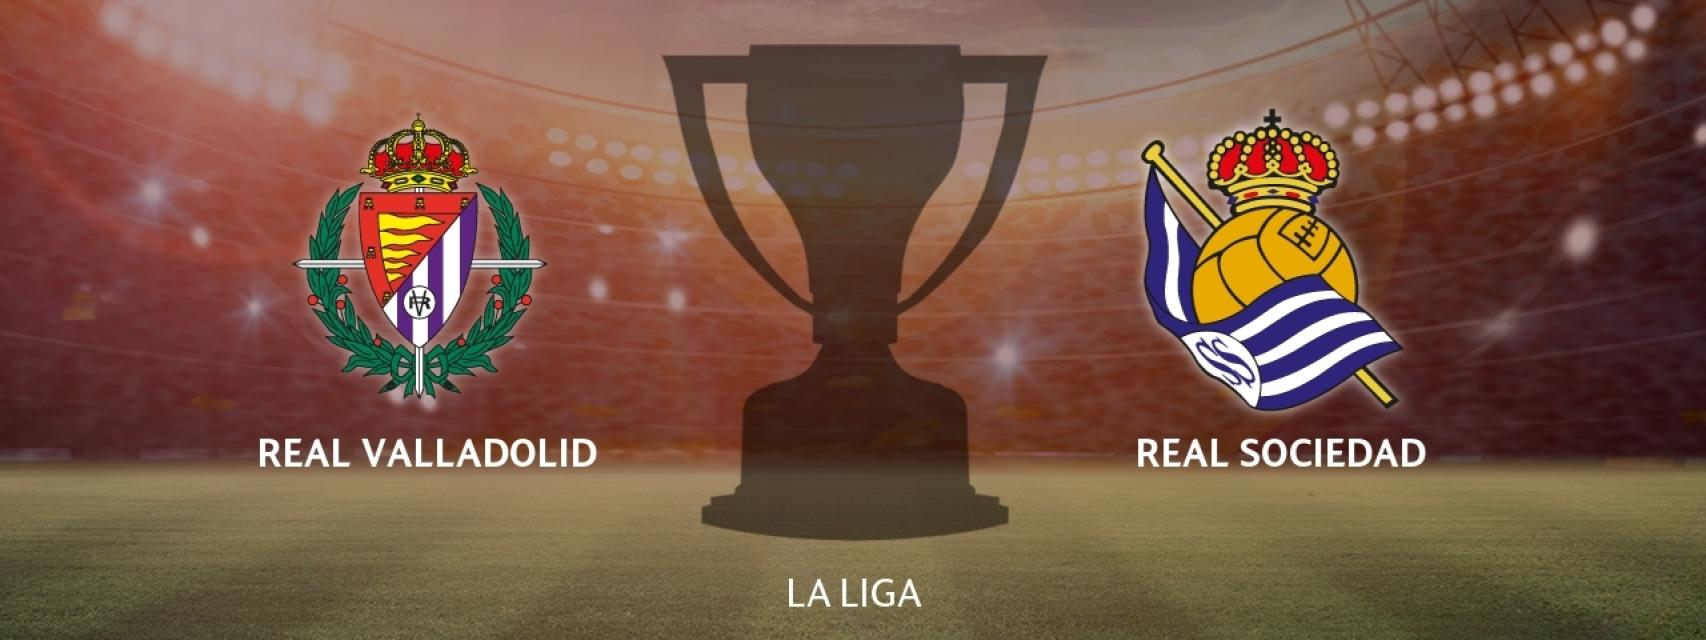 Real Valladolid - Real Sociedad